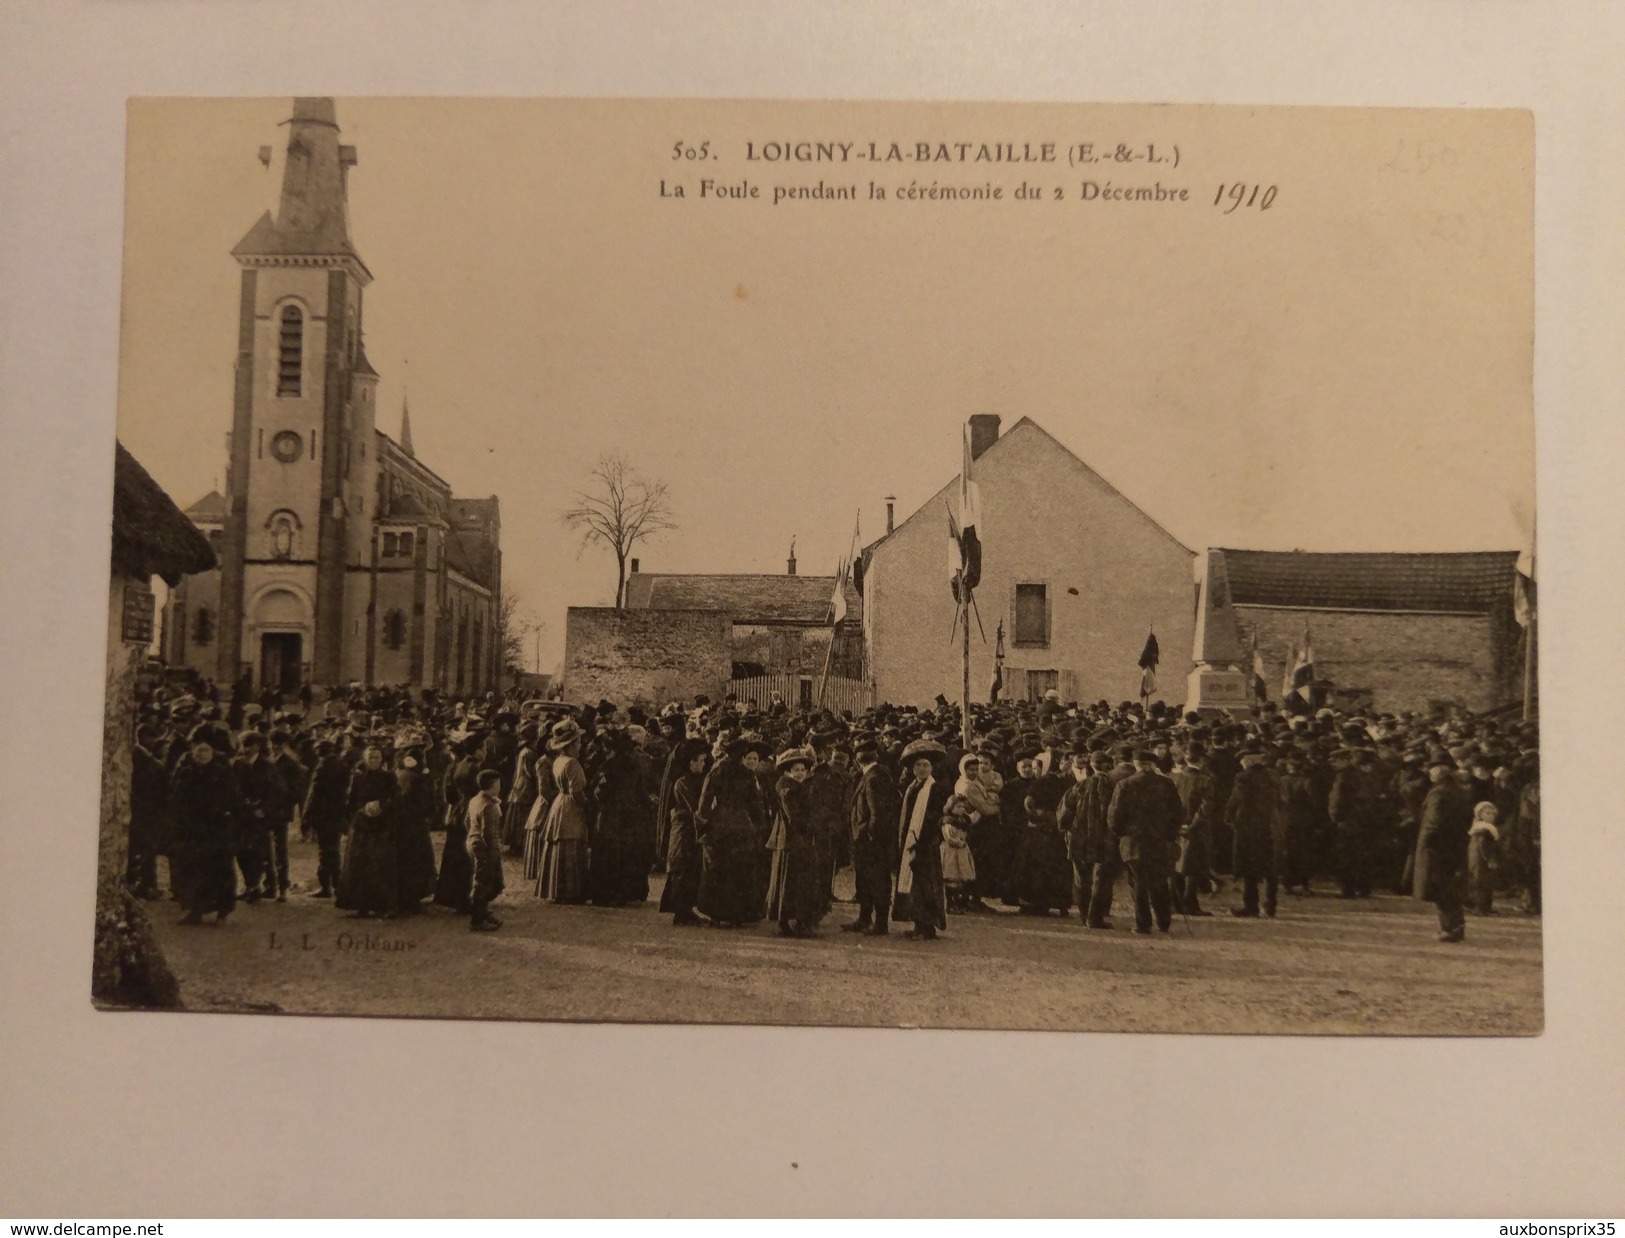 LOIGNY LA BATAILLE - LA FOULE PENDANT LA CÉRÉMONIE DU 2 DÉCEMBRE 1910 - 28 - Loigny